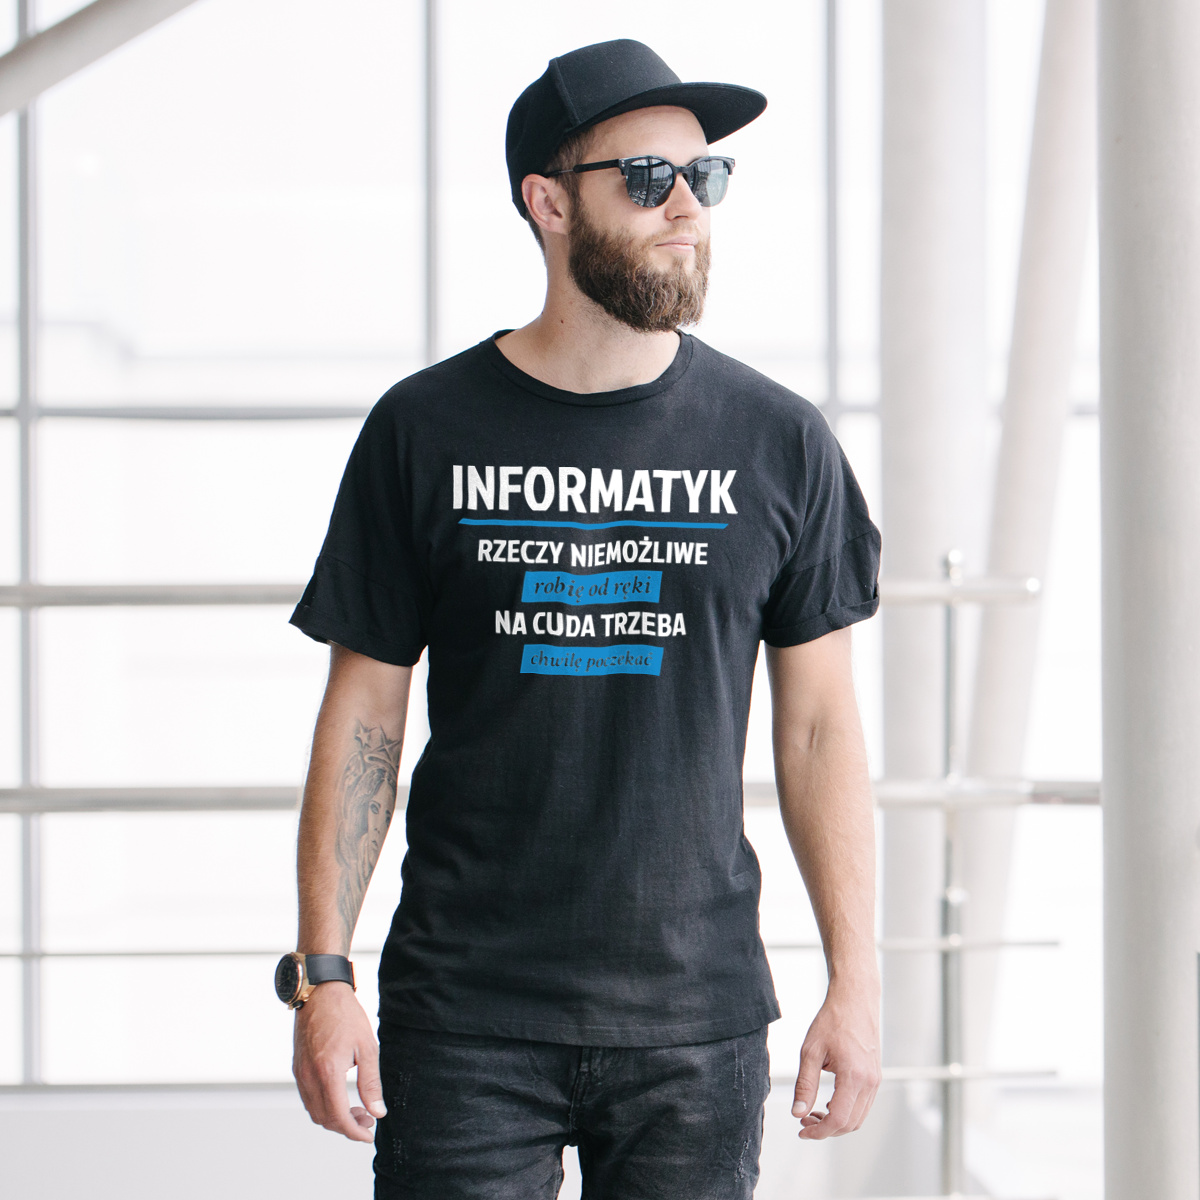 Informatyk - Rzeczy Niemożliwe Robię Od Ręki - Na Cuda Trzeba Chwilę Poczekać - Męska Koszulka Czarna